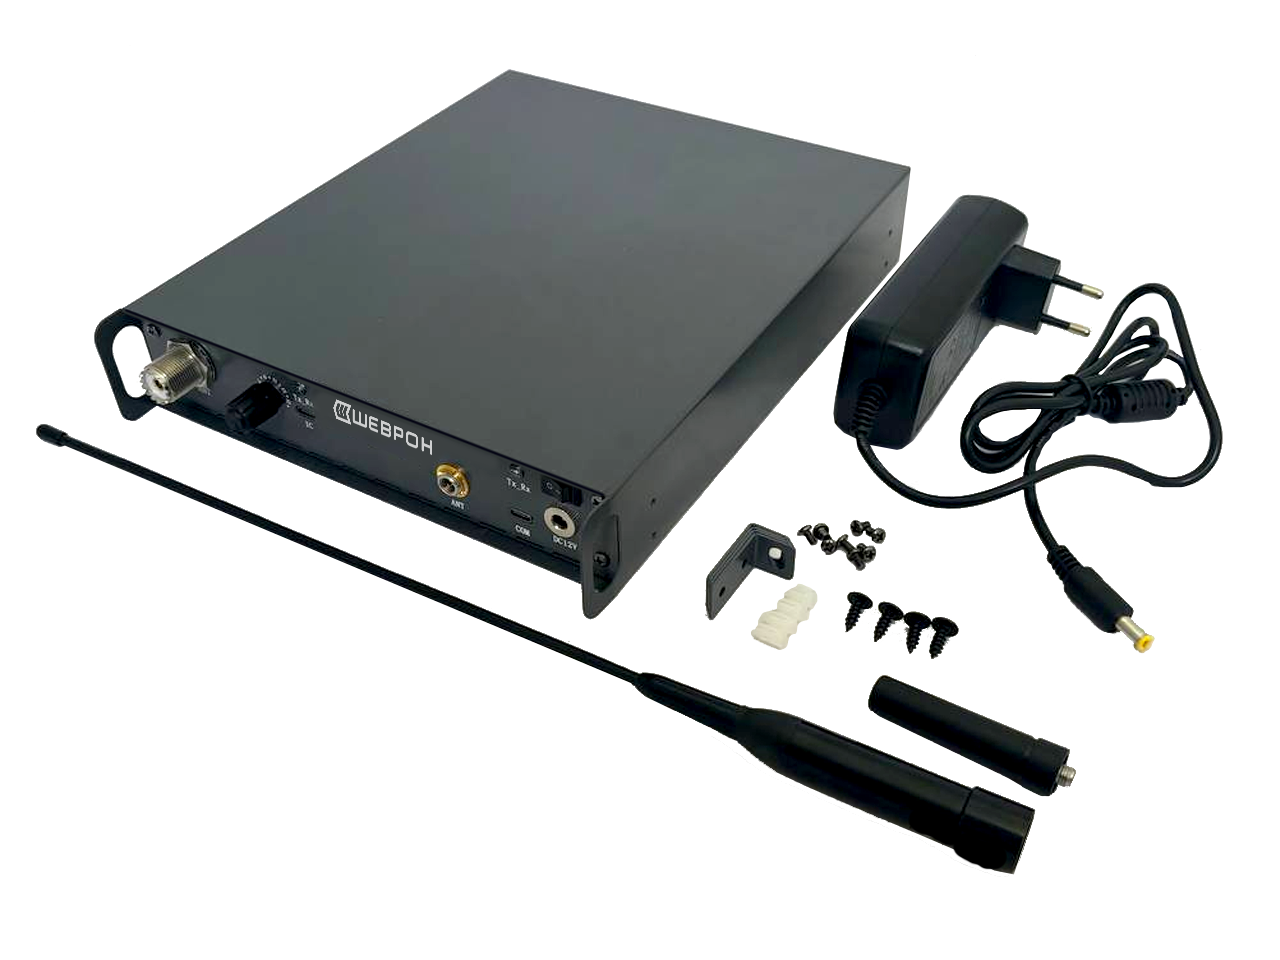 Рация Шеврон Т-34 U3 - профессиональная радиостанция для работы в VHF-диапазоне частот, предназначенная как для любительского, так и для профессионального использования.